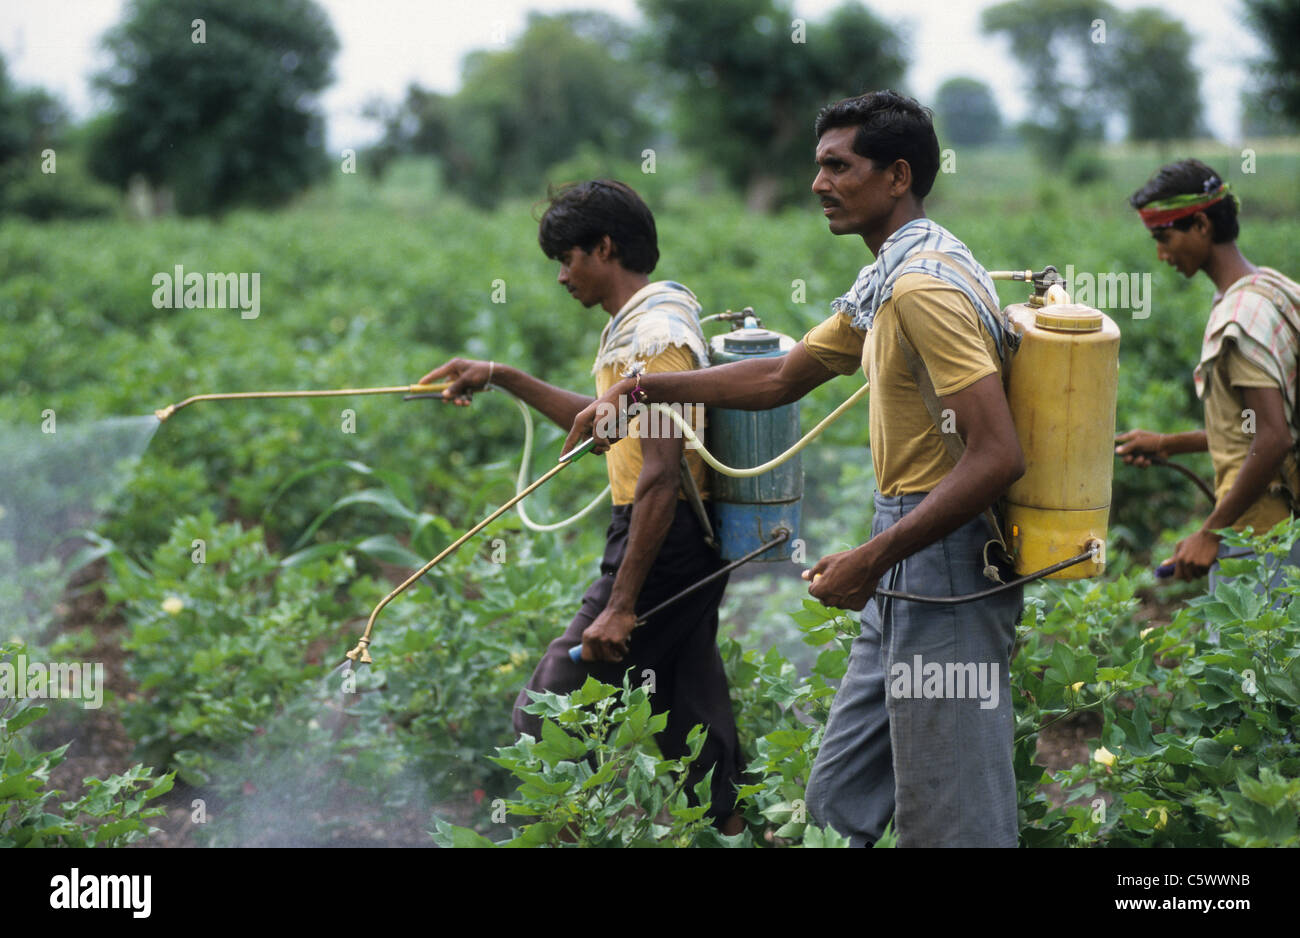 La India de Madhya Pradesh , trabajador de granja rociar pesticida químico herbicida cóctel en el campo de algodón Bt modificado gen contra plagas como el gusano y la cizaña Foto de stock